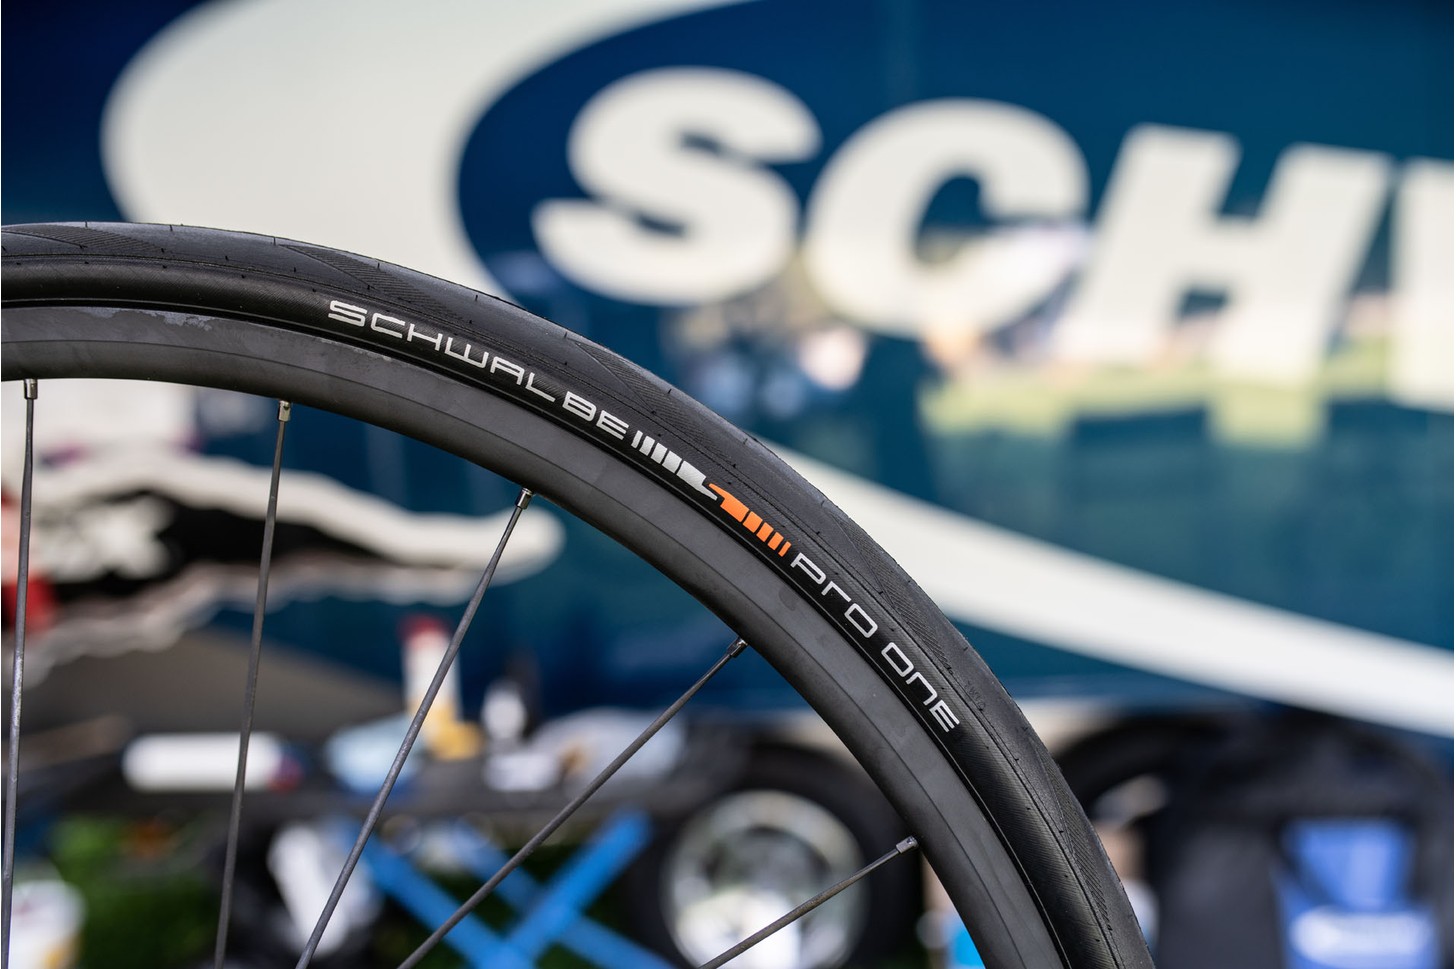 https://www.bikeradar.com/news/schwalbe-pro-one-tubeless-tyre-released/